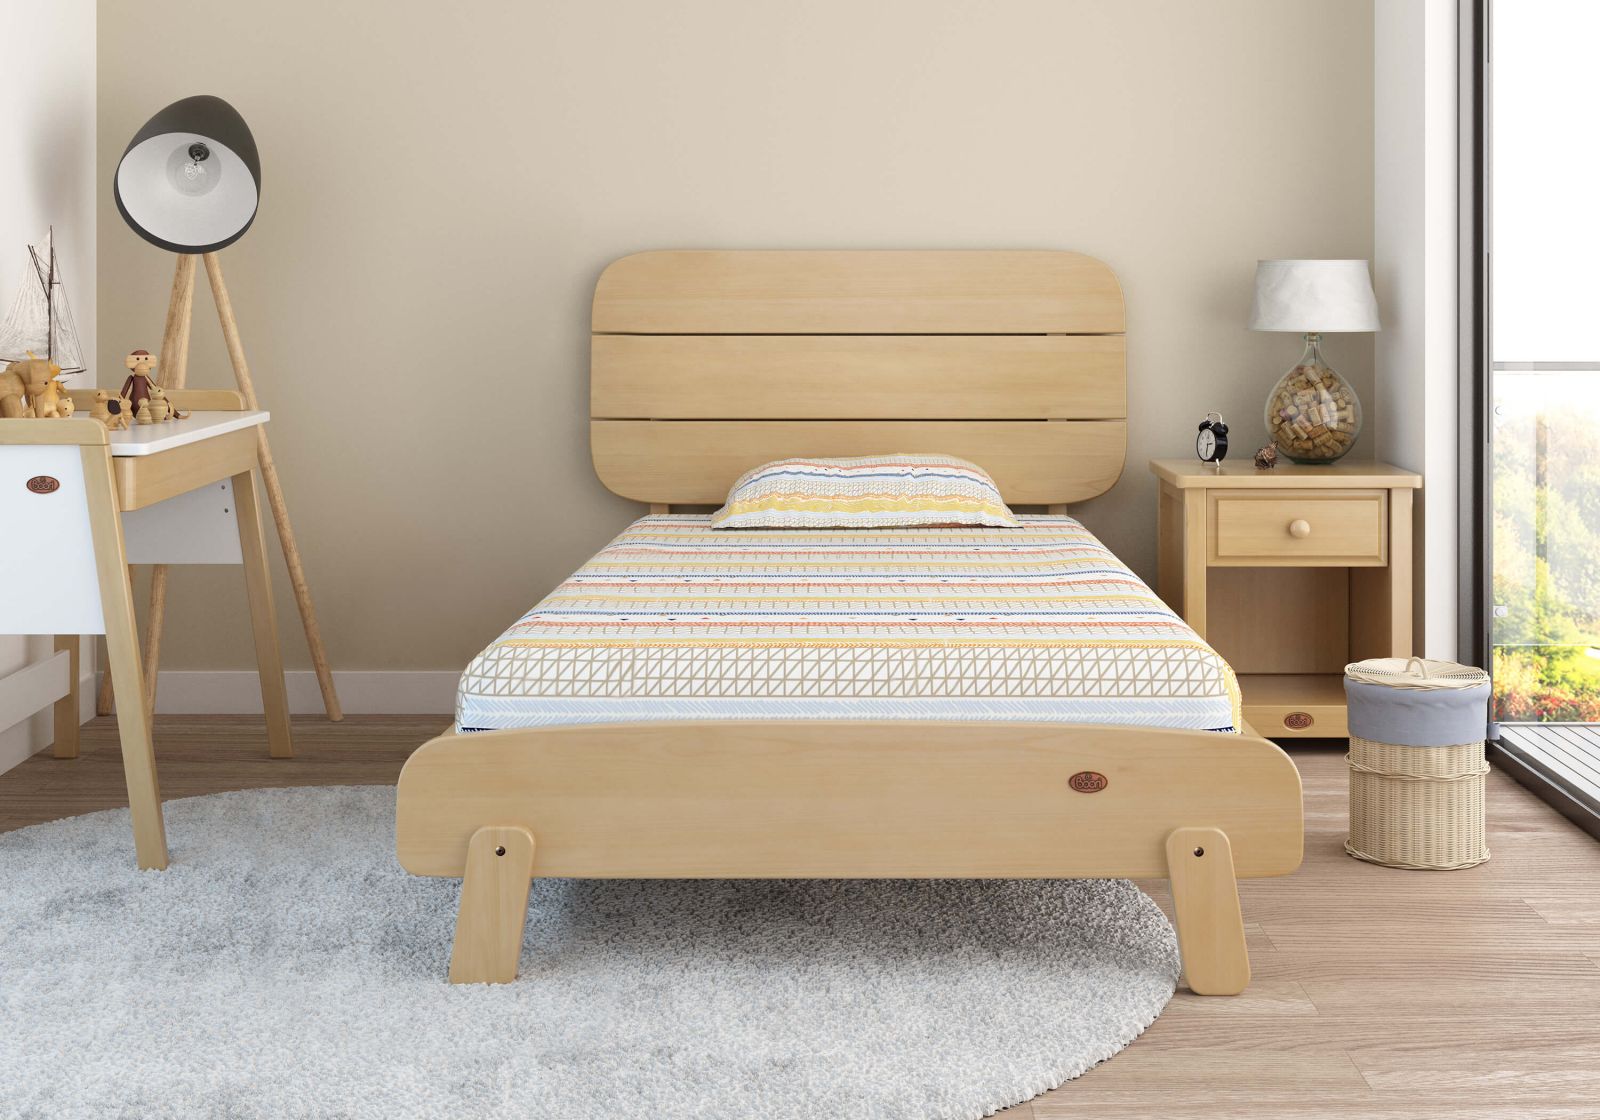 Mẫu giường ngủ đơn 1m với thiết kế độc đáo và sang trọng, sẽ mang đến cho gia chủ một không gian sống tối ưu hơn. Với những hình ảnh thật cho biết nhiều khuôn mẫu độc đáo, chúng tôi sẽ cung cấp cho bạn những sản phẩm chất lượng tốt nhất, giúp tối đa hóa tính tiện dụng và thẩm mỹ cho không gian của bạn.